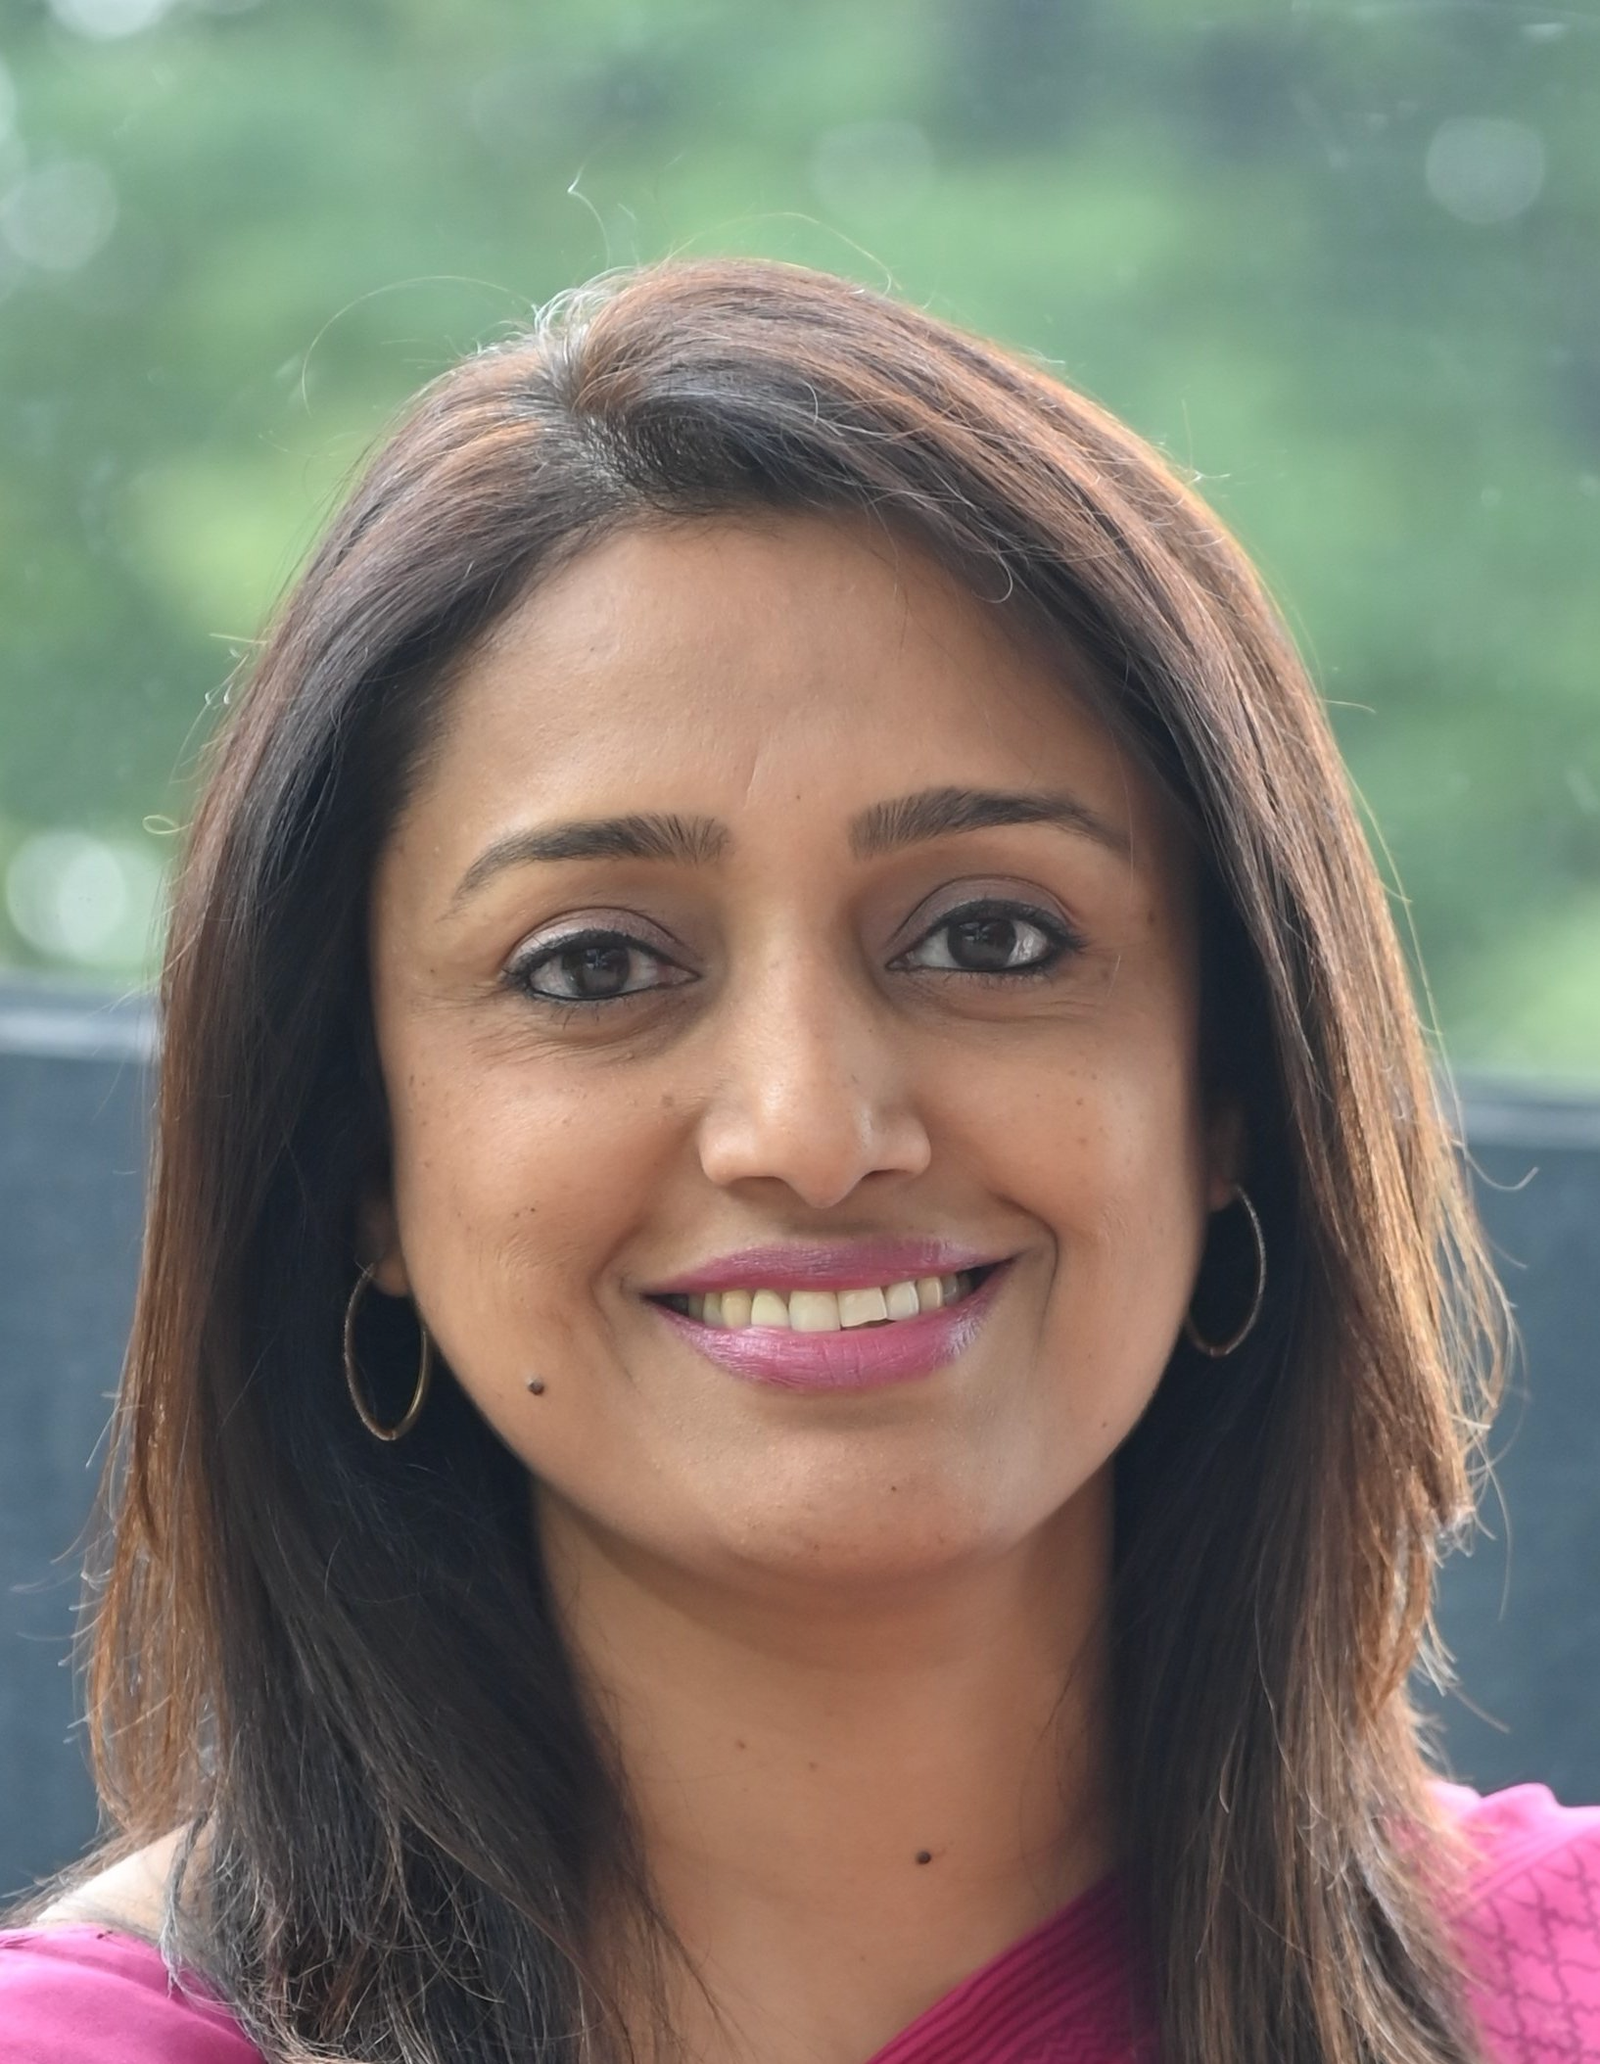 Shaina Ganapathy